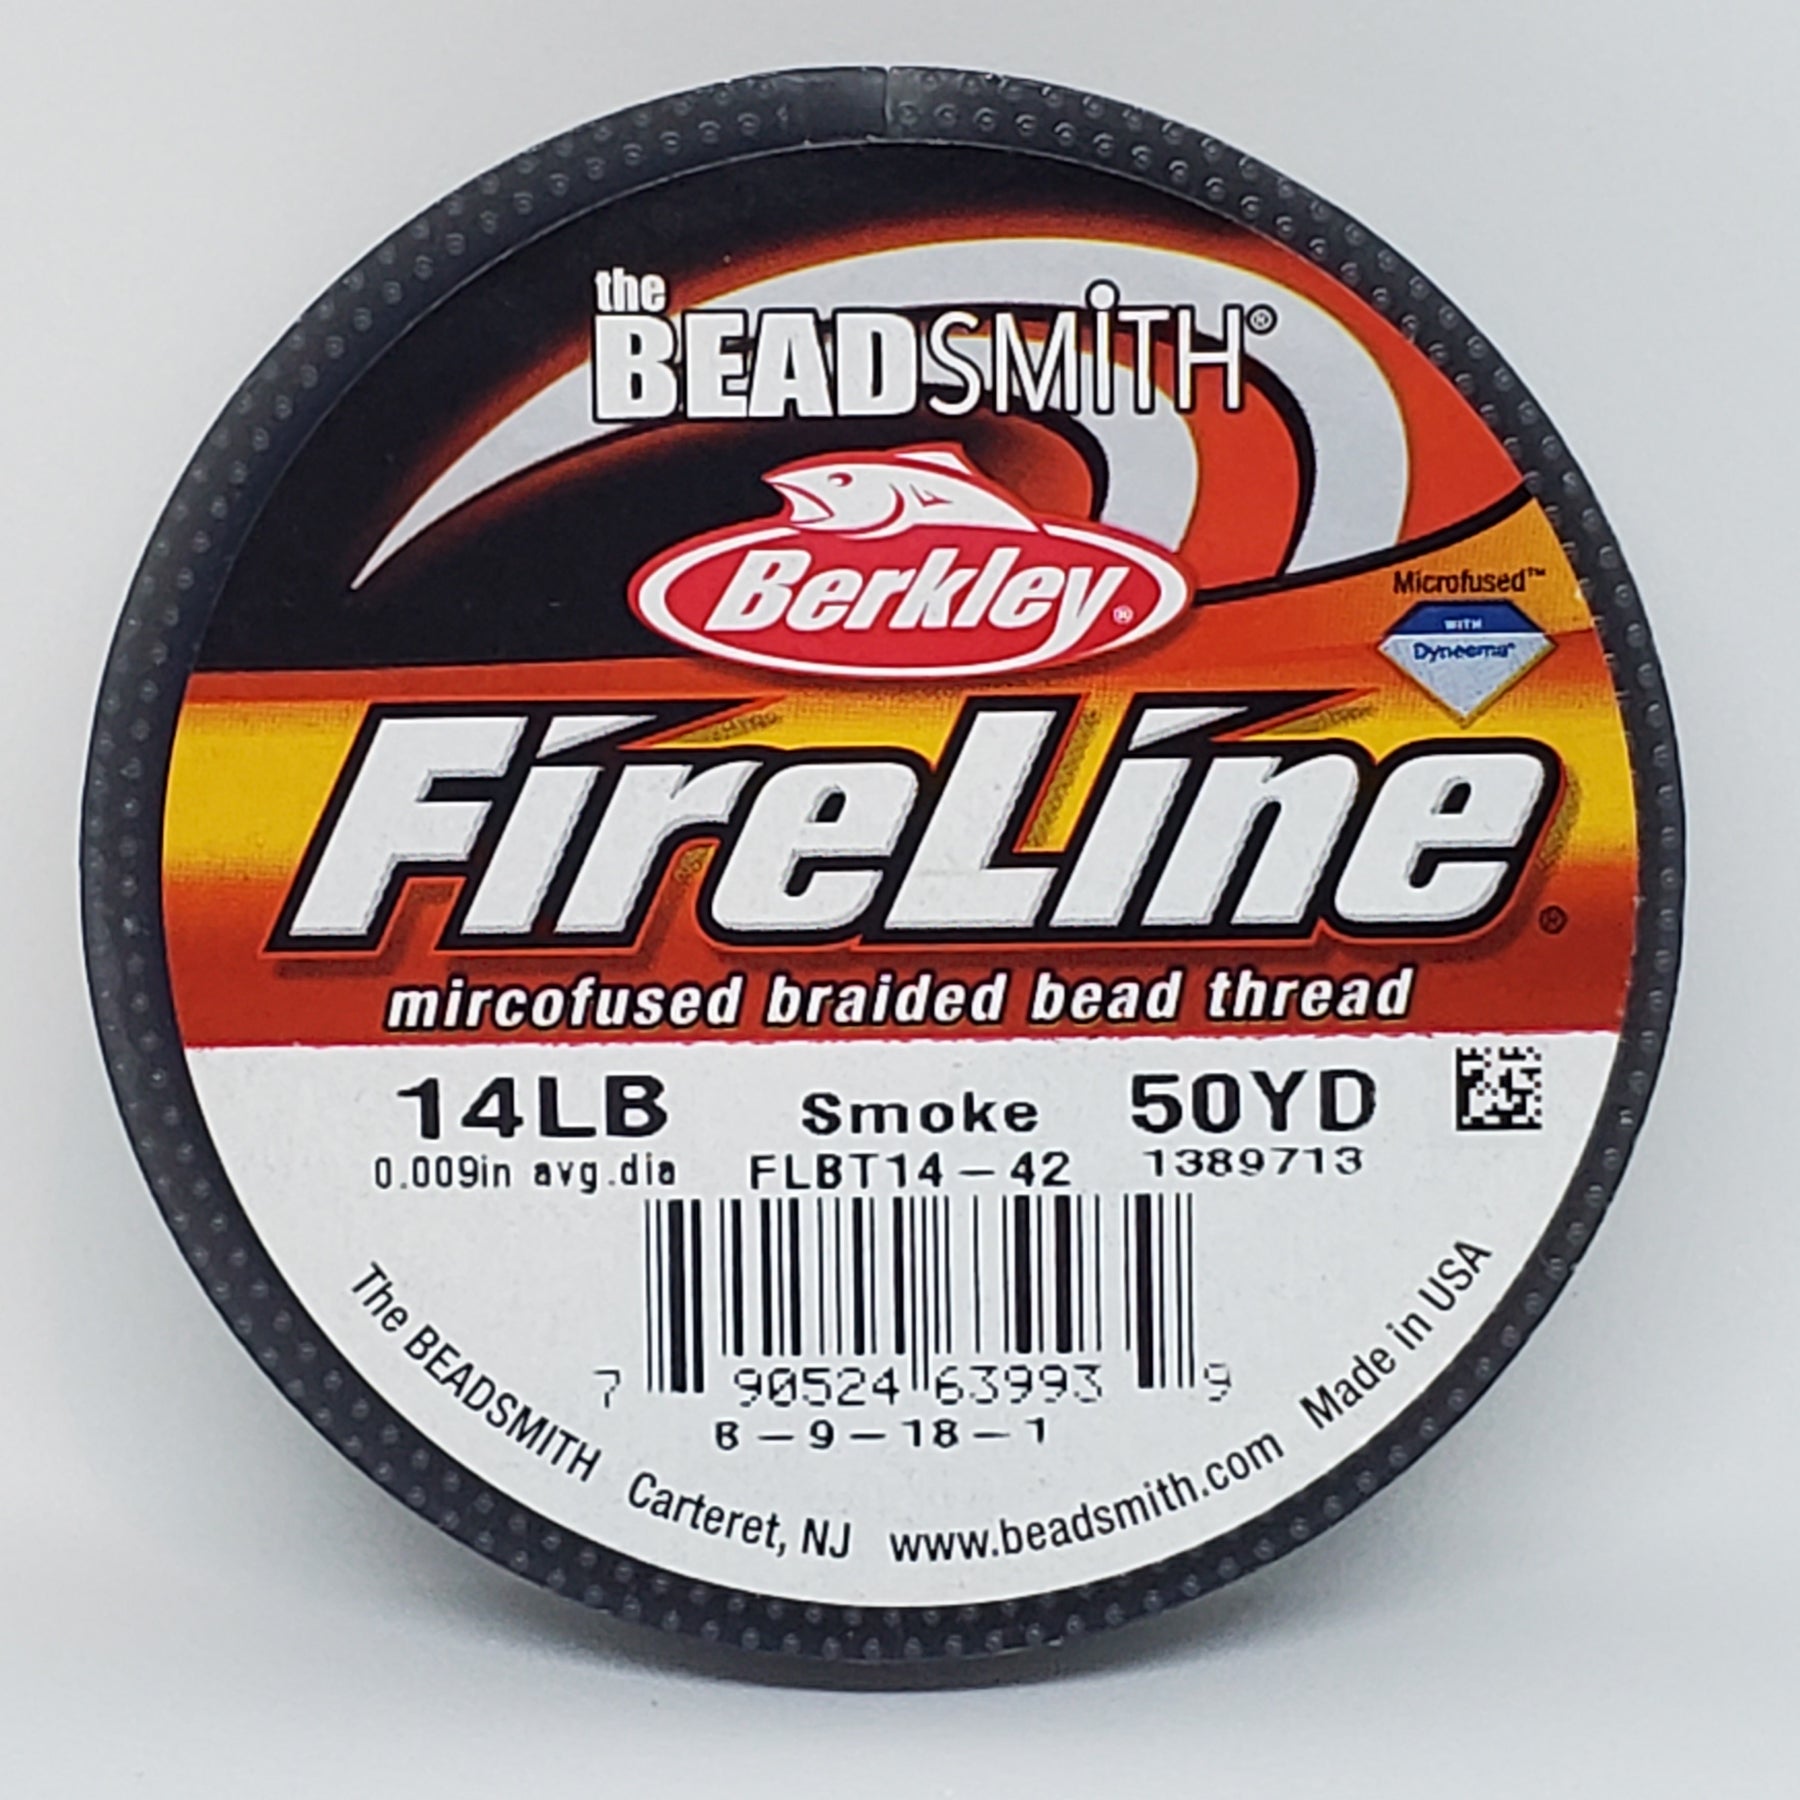 Fireline Prewaxed Thread Crystal 6lb 50 yds